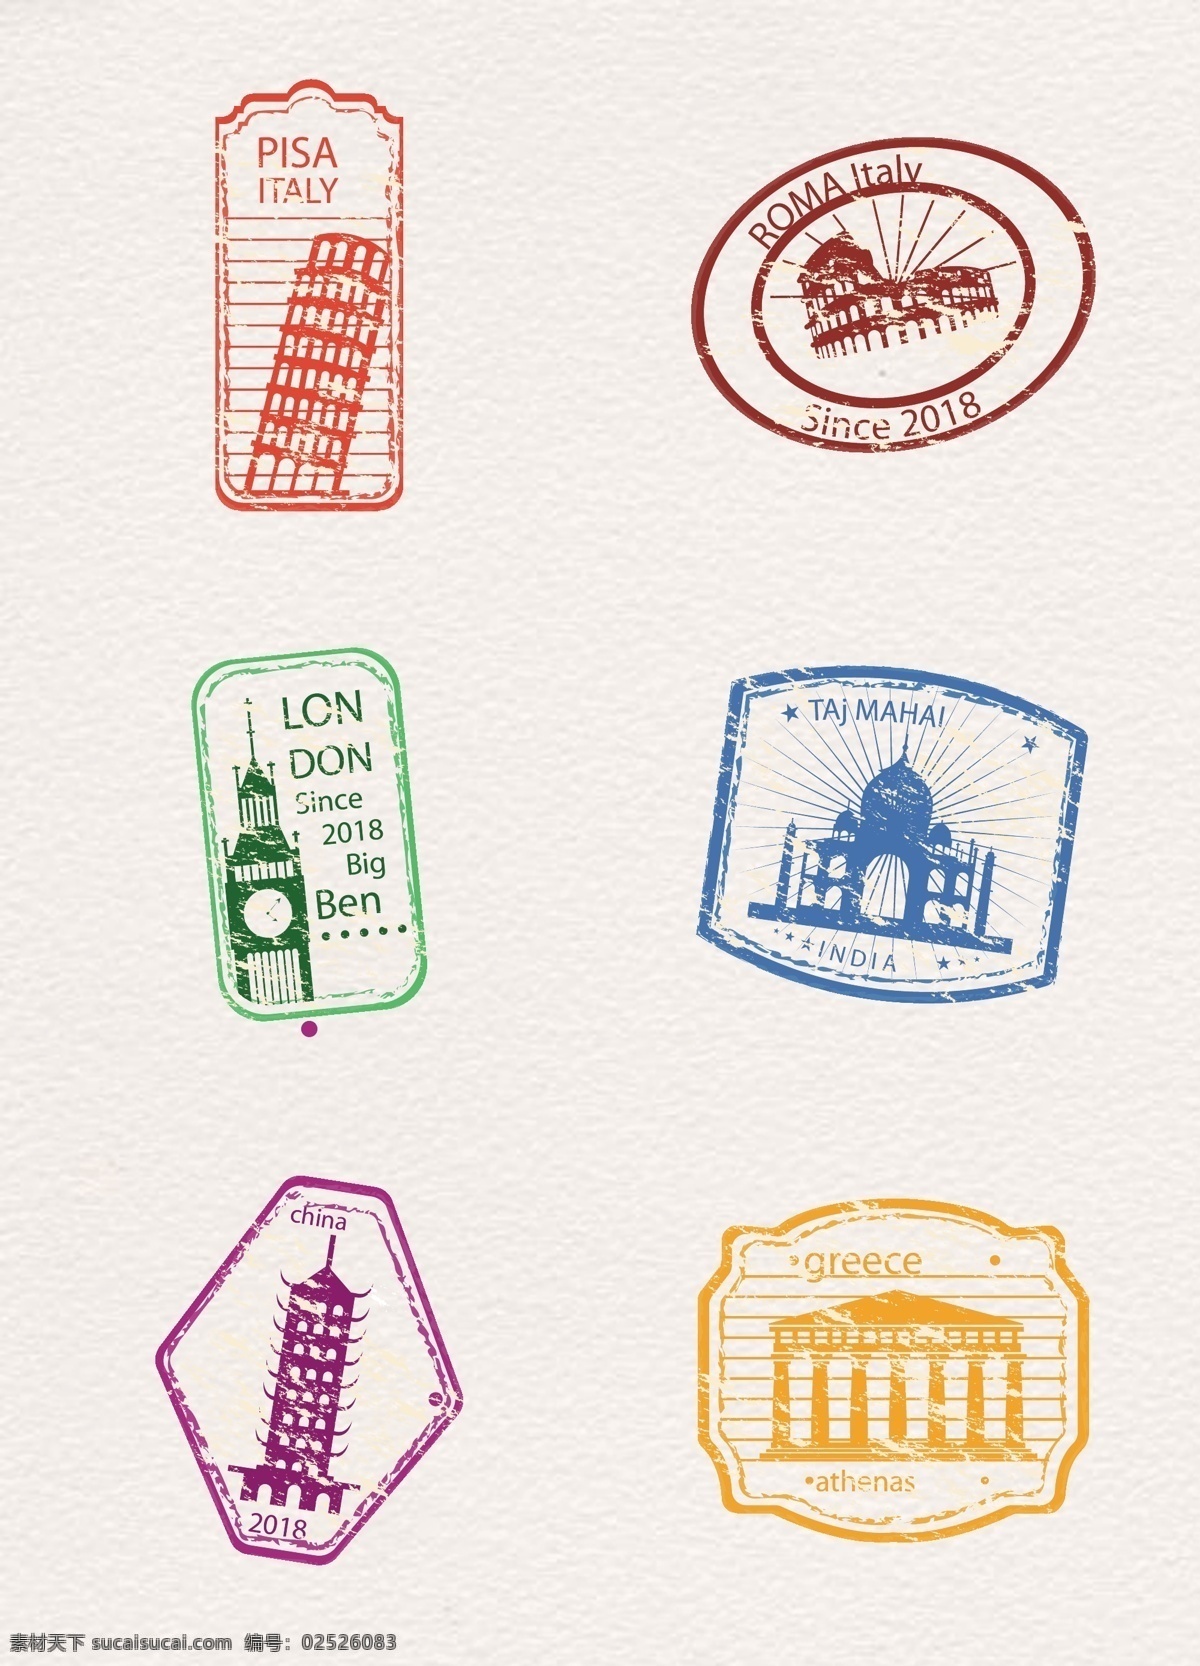 彩色 世界 标志性 建筑 邮票 矢量 元素 标志性建筑 比萨 城堡 卡通邮票 伦敦 彩色邮票 矢量邮票 邮票元素 外国建筑邮票 邮票装饰